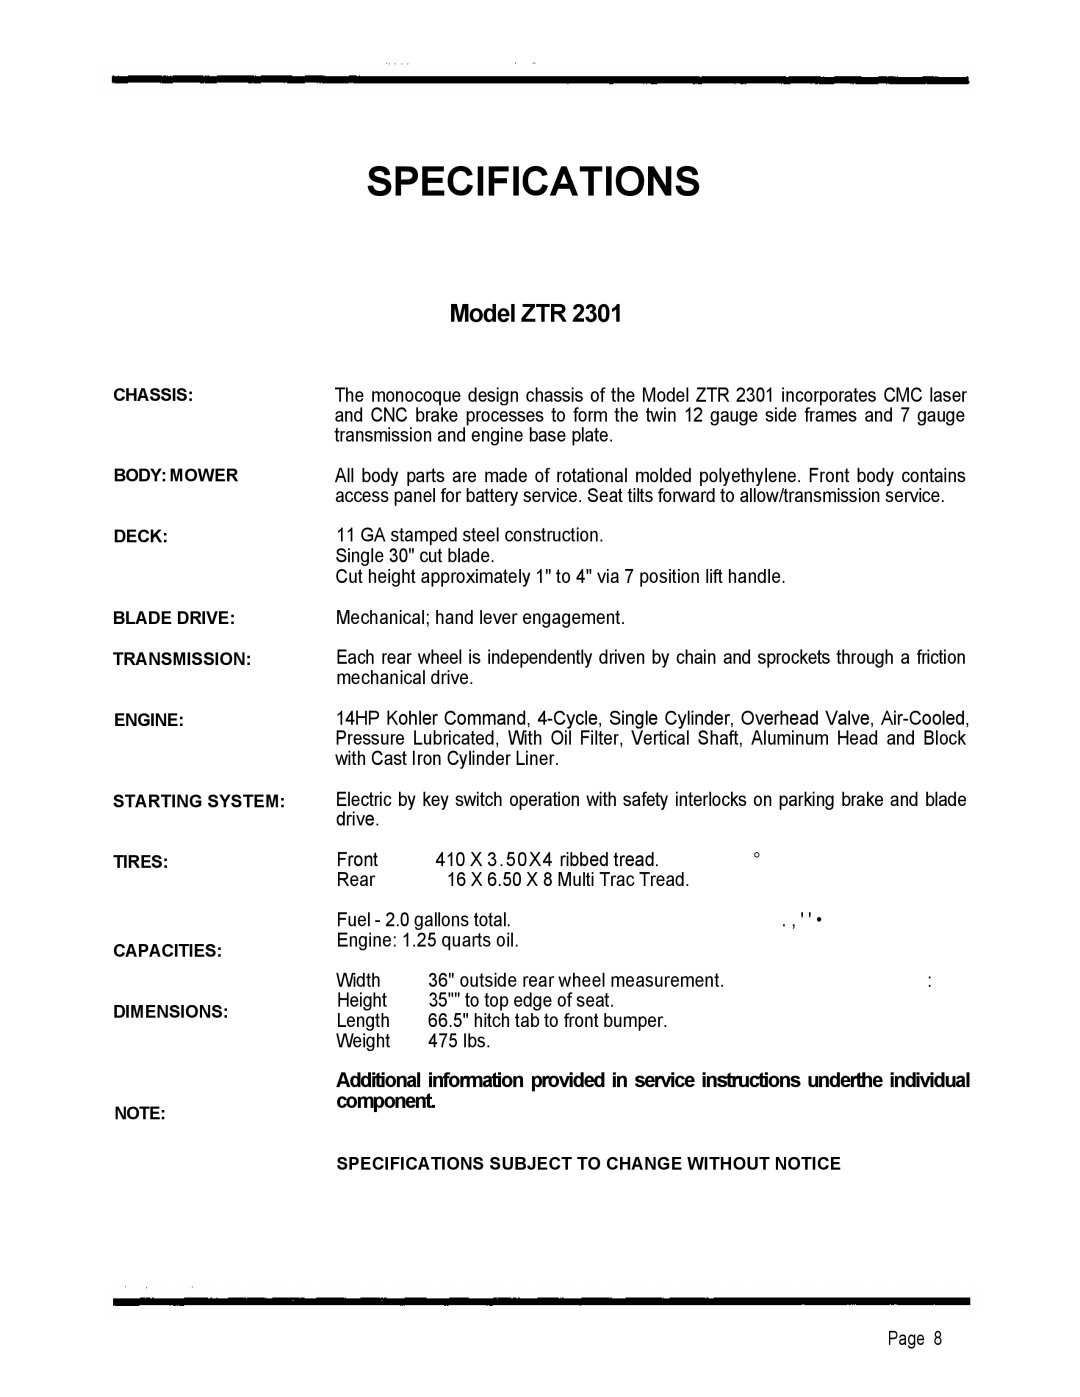 Dixon 2301 manual Specifications, Model ZTR 